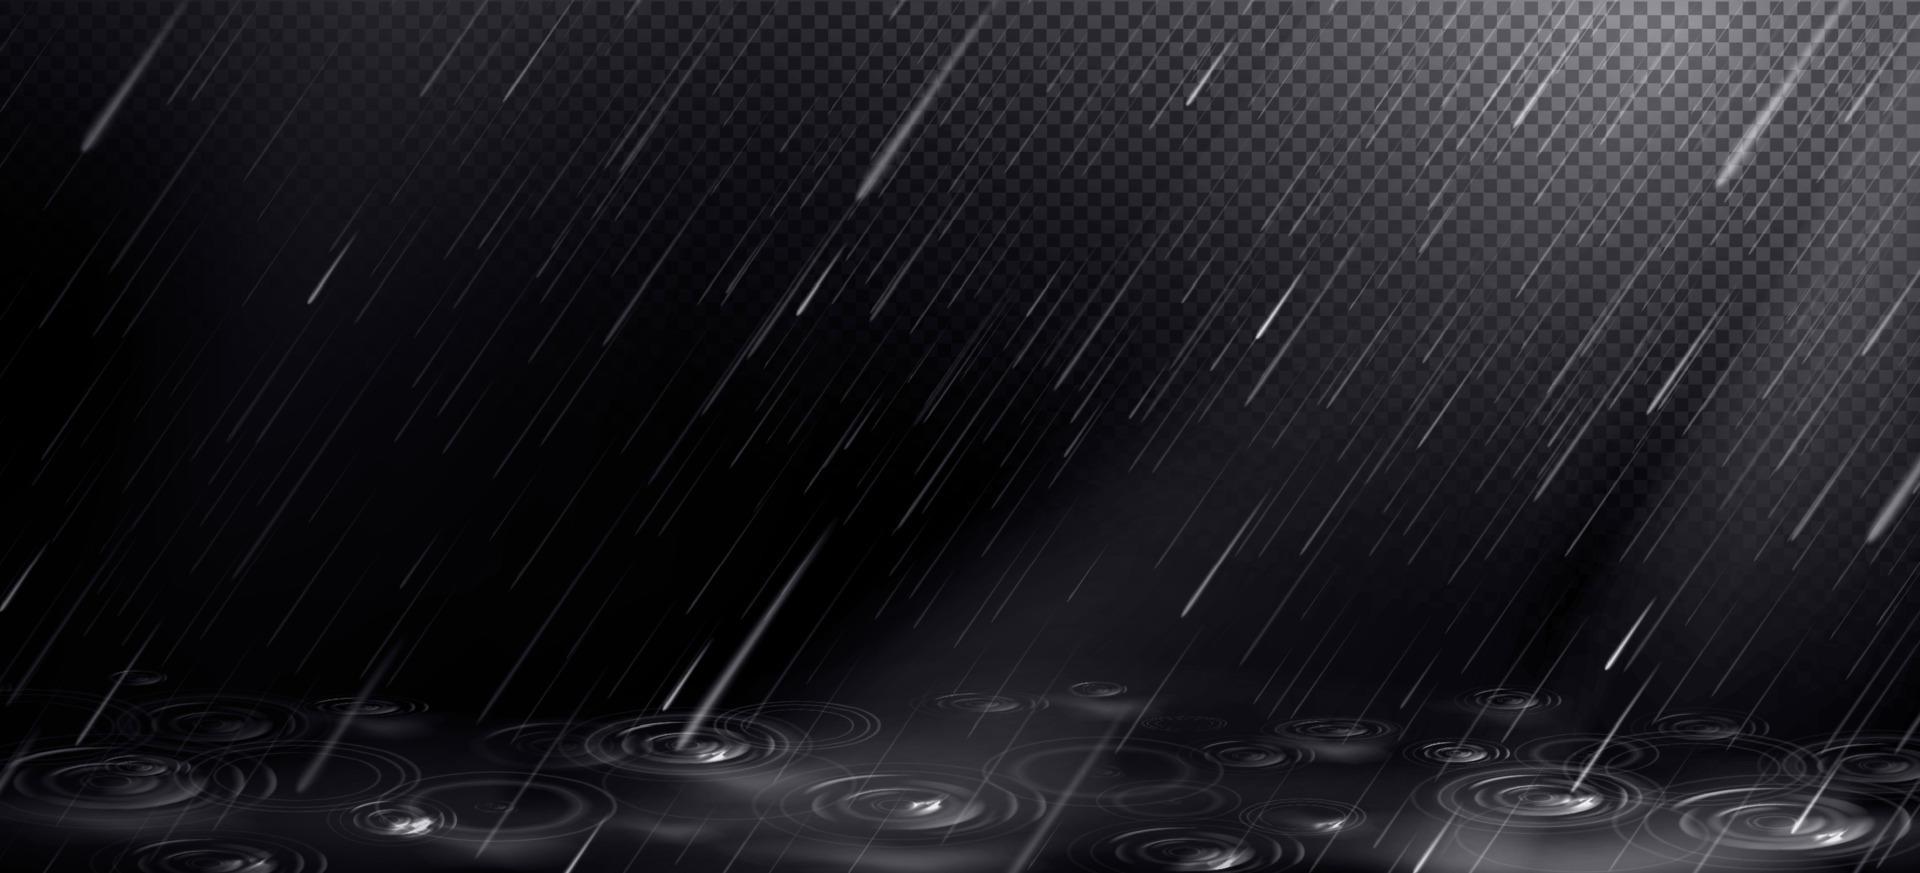 Regen, fallende Wassertropfen und Pfützenkräuselungen. vektor